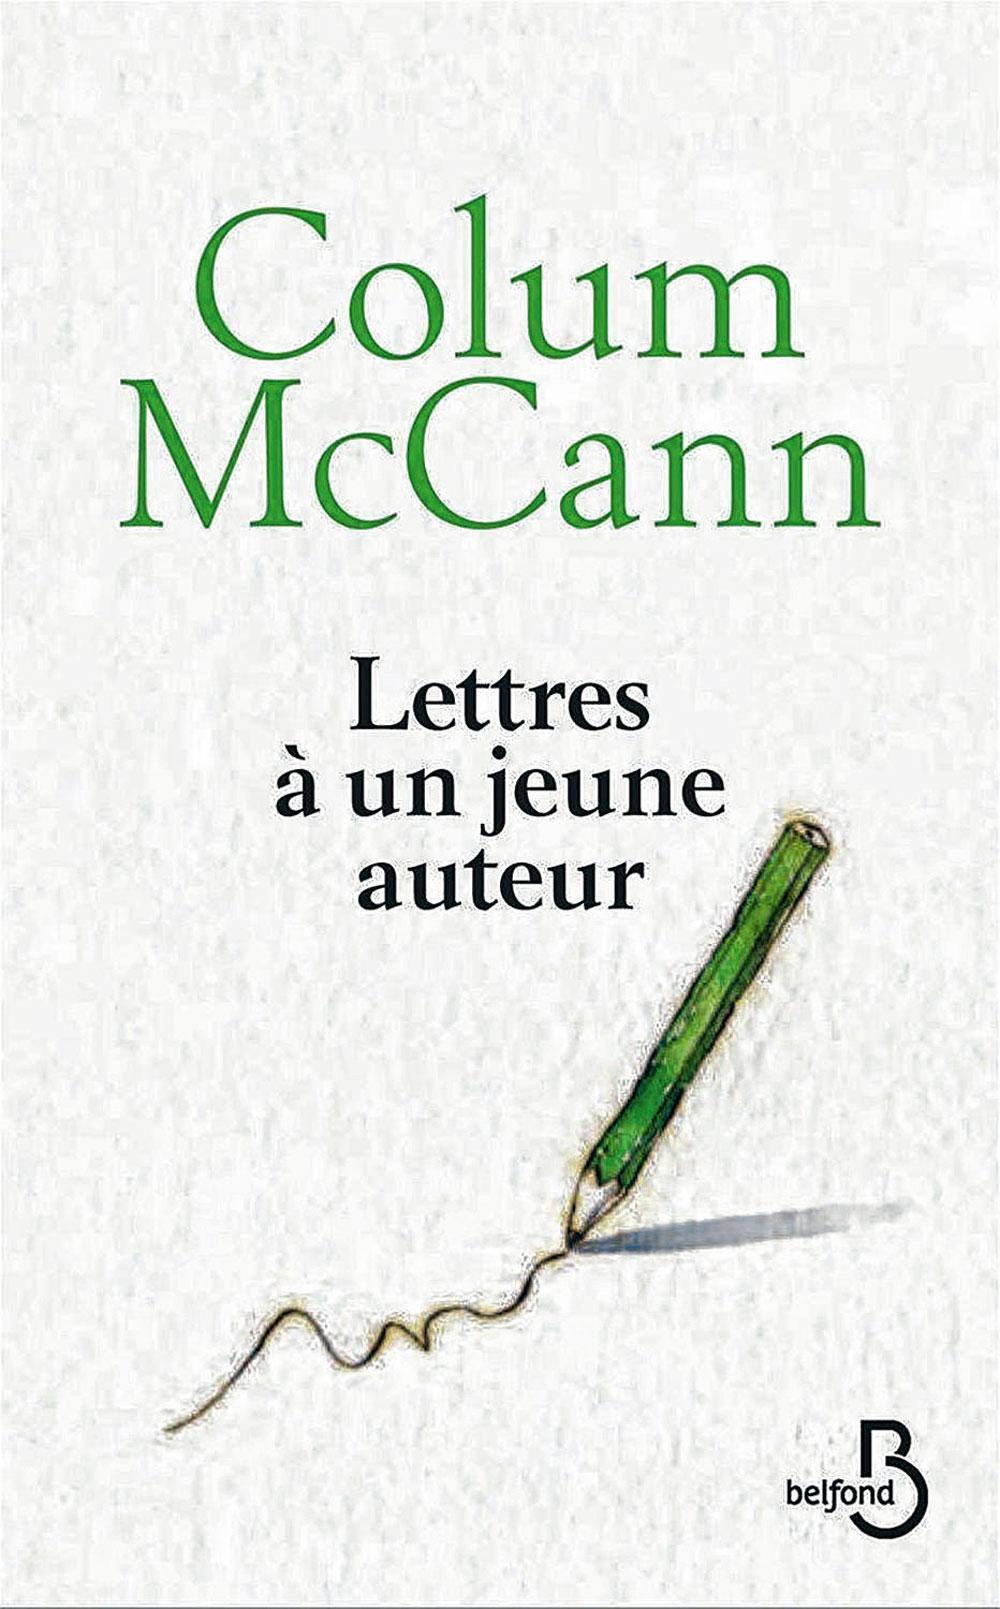 Lettres à un jeune auteur, par Colum McCann, trad. de l'anglais (Irlande) par Jean-Luc Piningre, Belfond, 178 p.